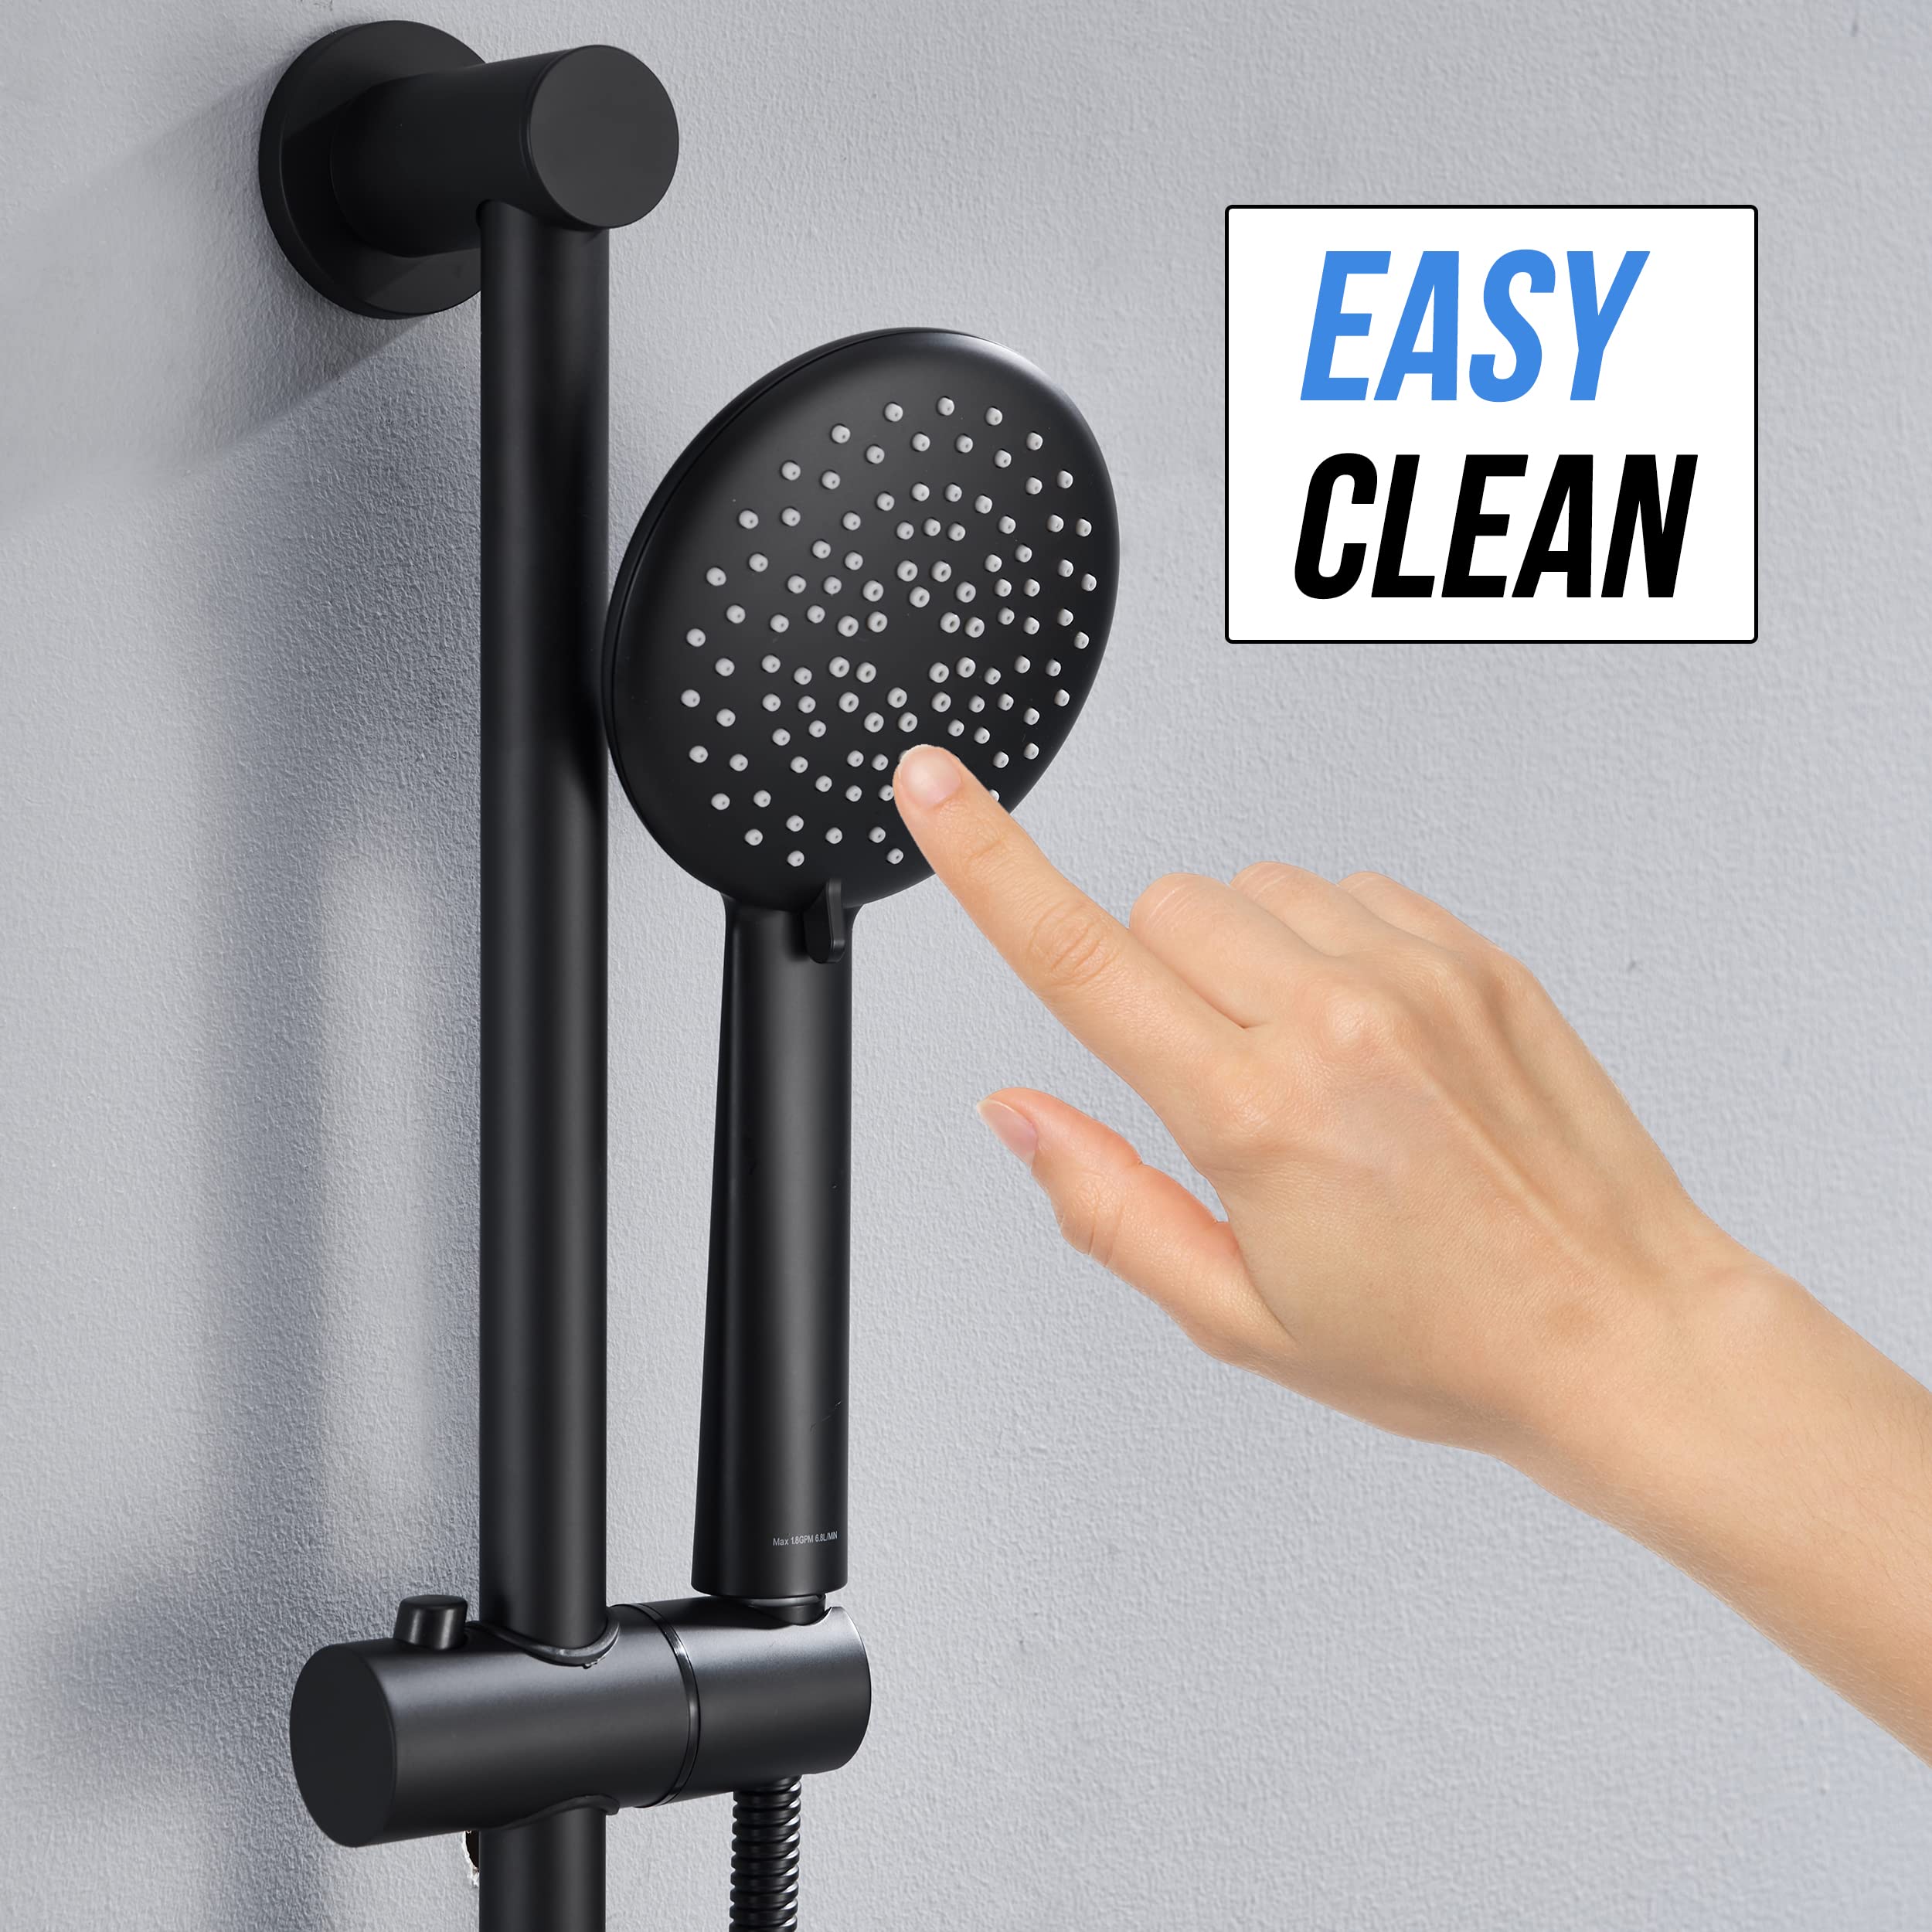 Gabrylly Slide Bar Shower Faucet Set for Bathroom with High Pressure 5-Setting Handheld Shower Set, Shower Valve with Trim and Diverter,Matte Black